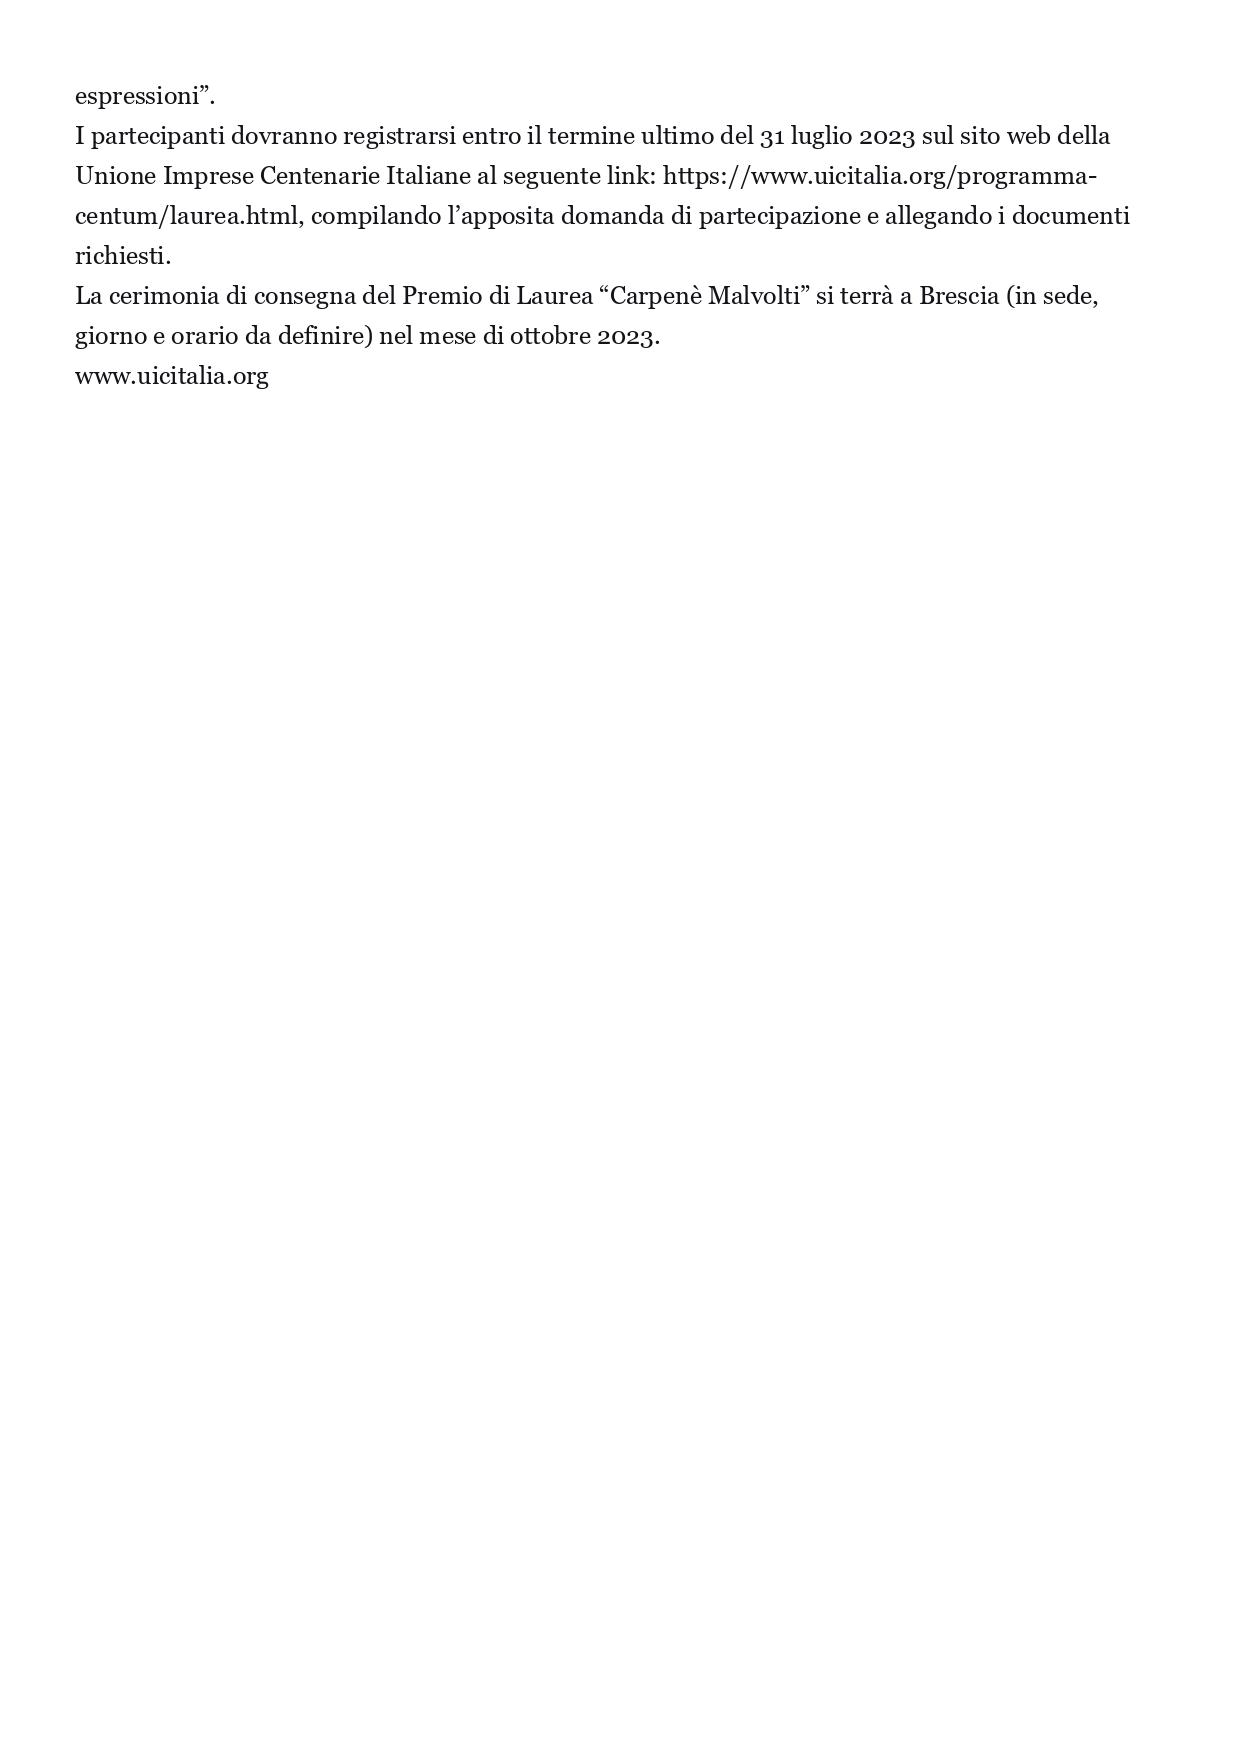 Agenparl Bergamo Brescia 2023 al via la terza edizione del Premio di Laurea Carpenè Malvolti 21 febbraio 2023 page 0002